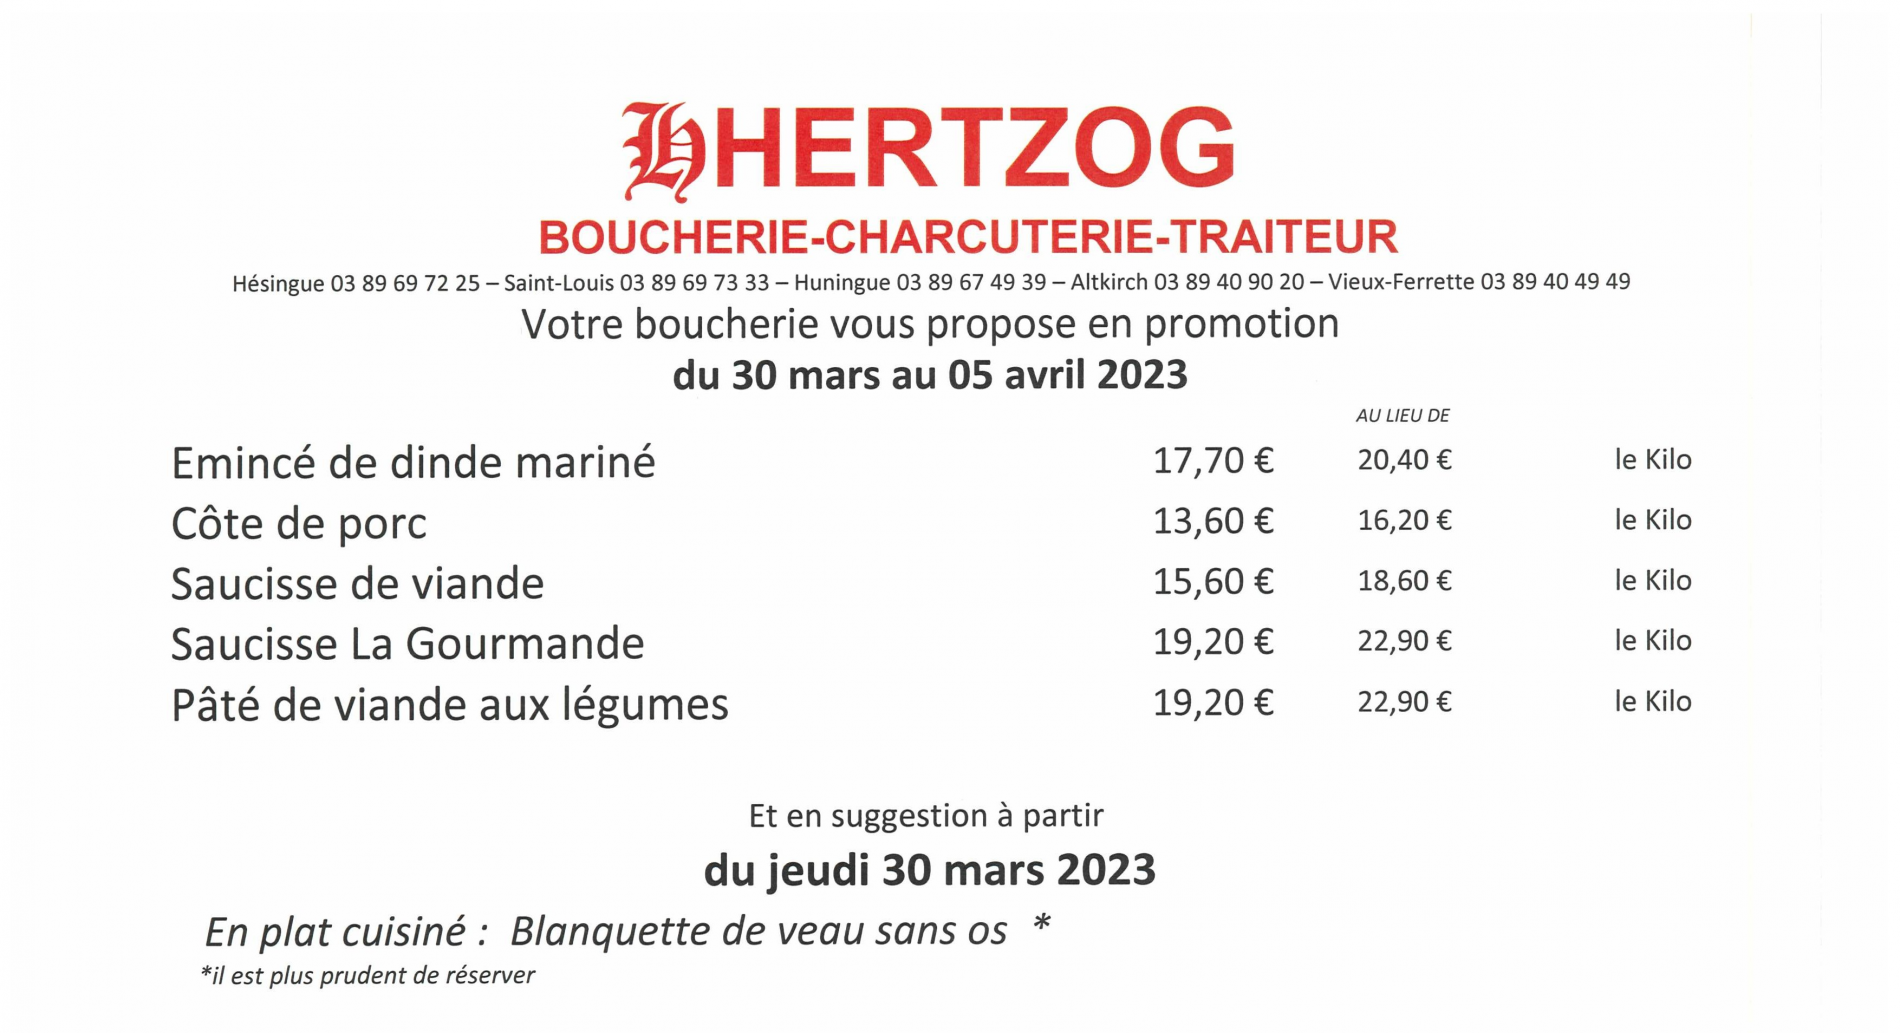 BOUCHERIE HERTZOG - Promotions du 30/03 au 05/04